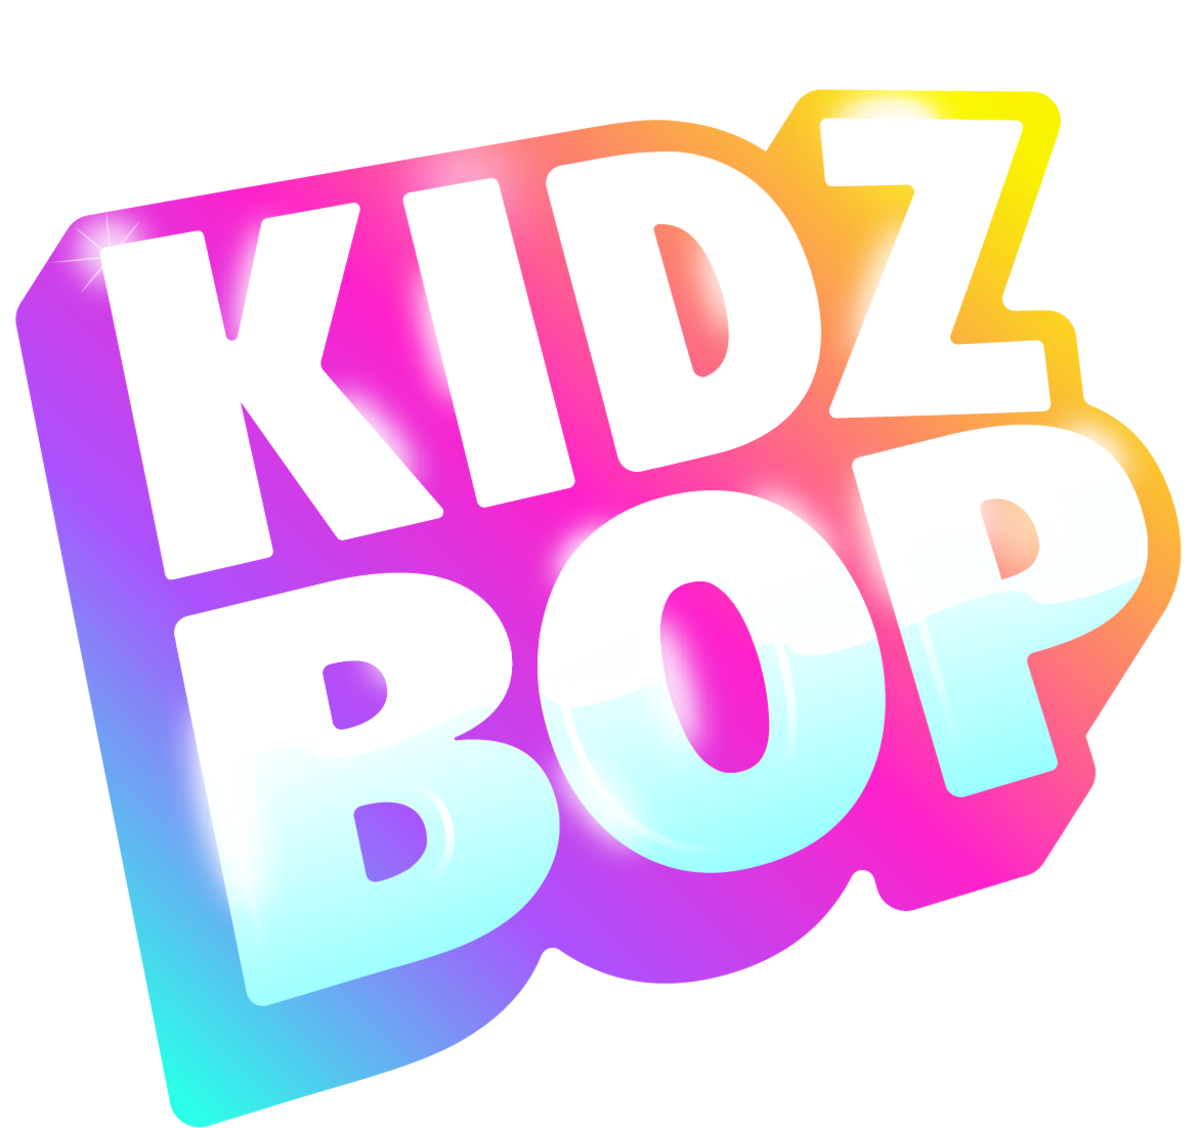 Kidz Bop Kids - Kidz Bop, Vol. 2